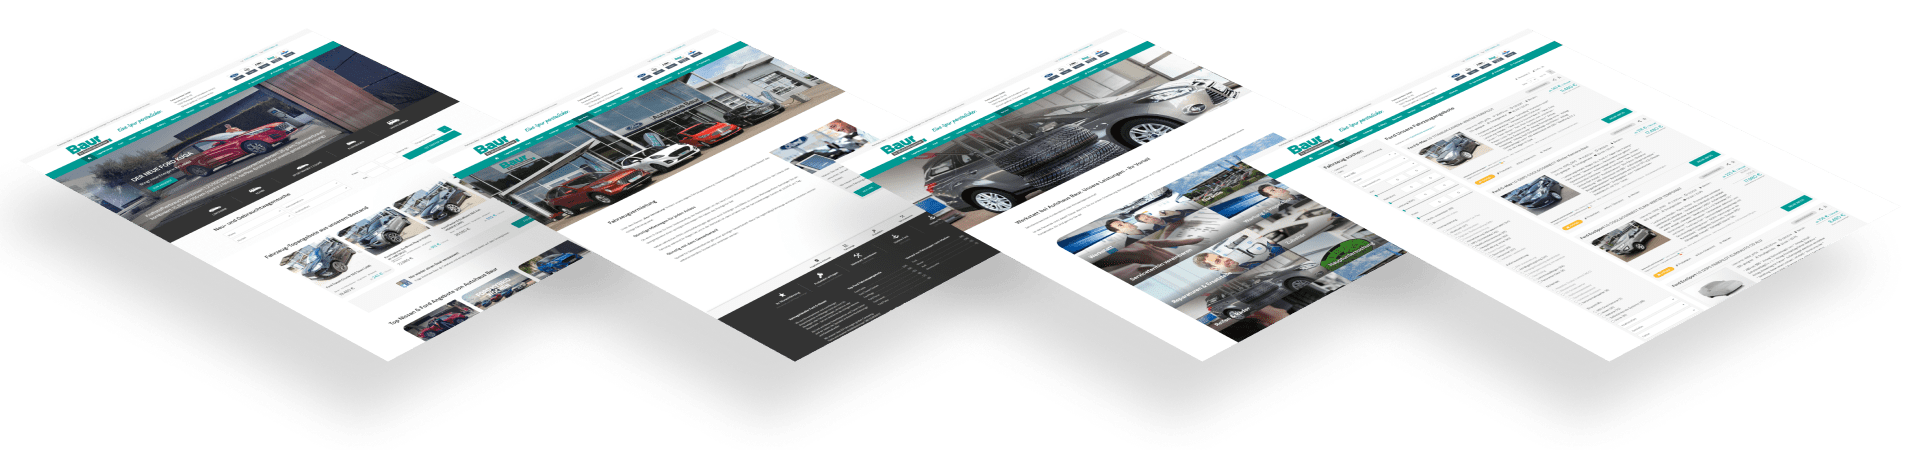 Autohaus Baur - Symfio - Homepage für Markenhändler erstellen